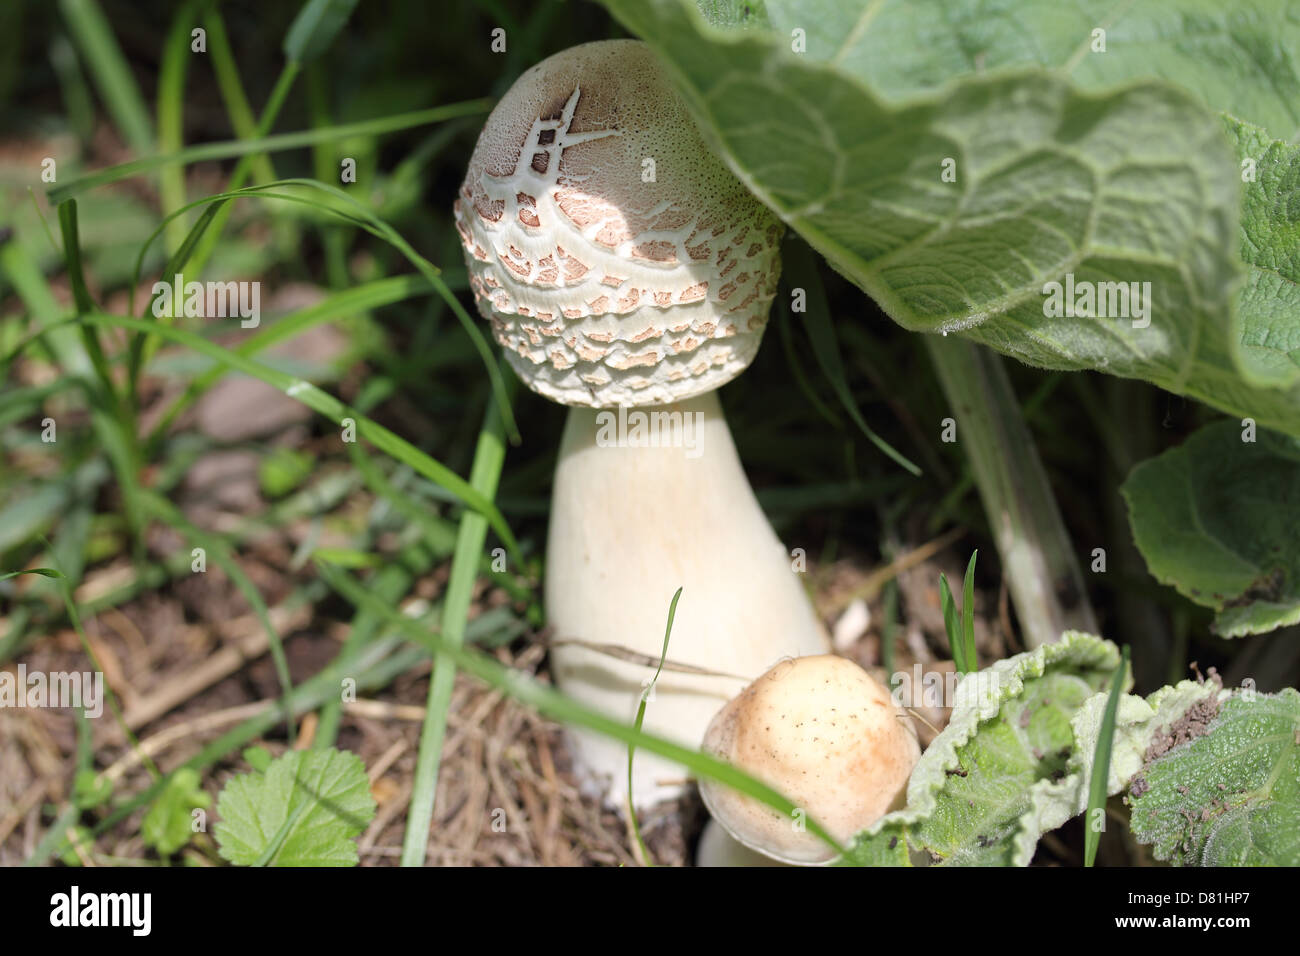 Les champignons blancs dans une herbe Banque D'Images